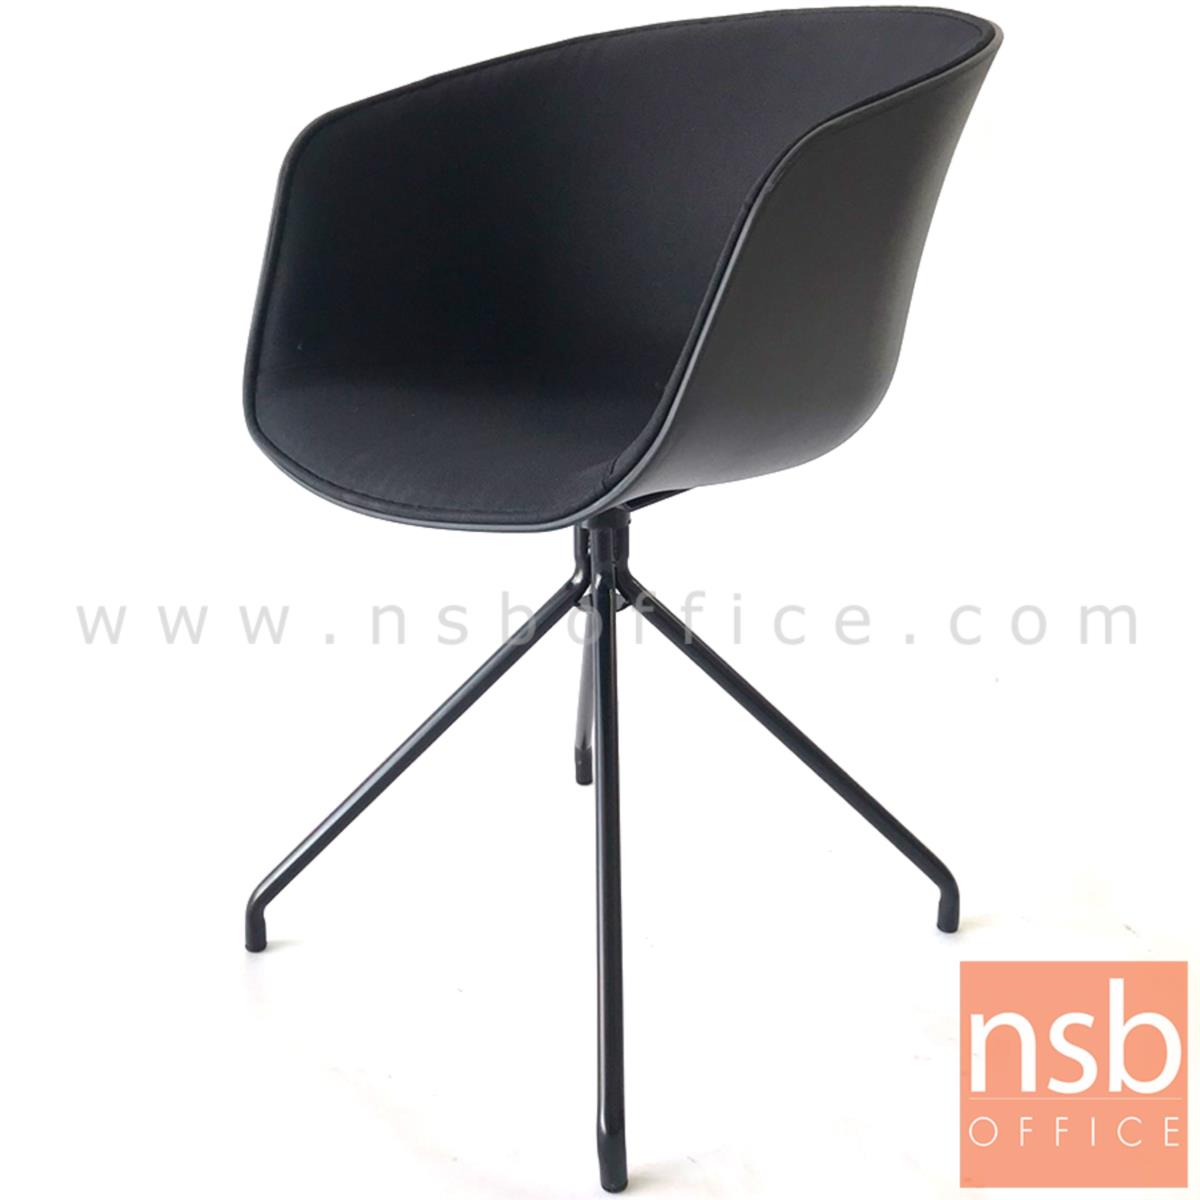 เก้าอี้โพลี่ที่นั่งหุ้มผ้า รุ่น Bonita (โบนิต้า) ขนาด 55W cm. ขาเหล็กดำ